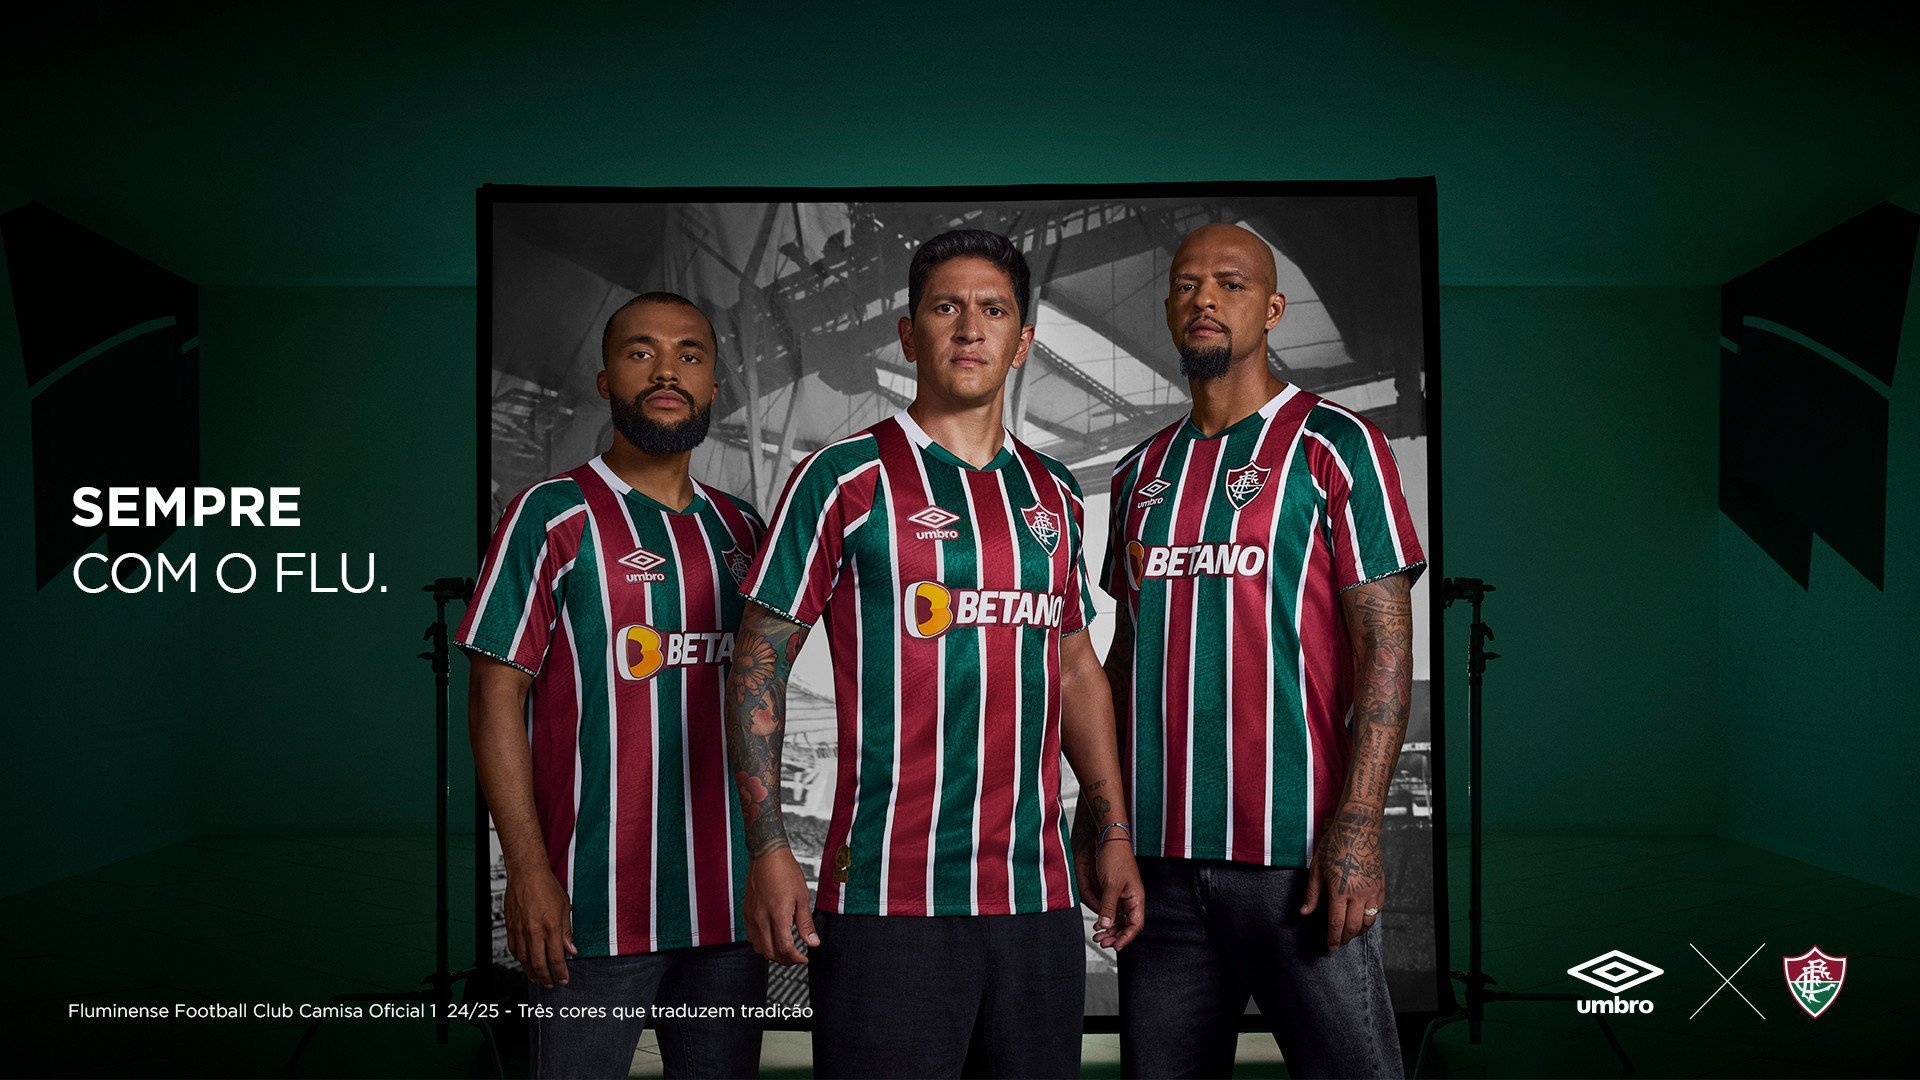 Nova camisa do Fluminense estreia nesta quinta-feira, contra a LDU. Veja!